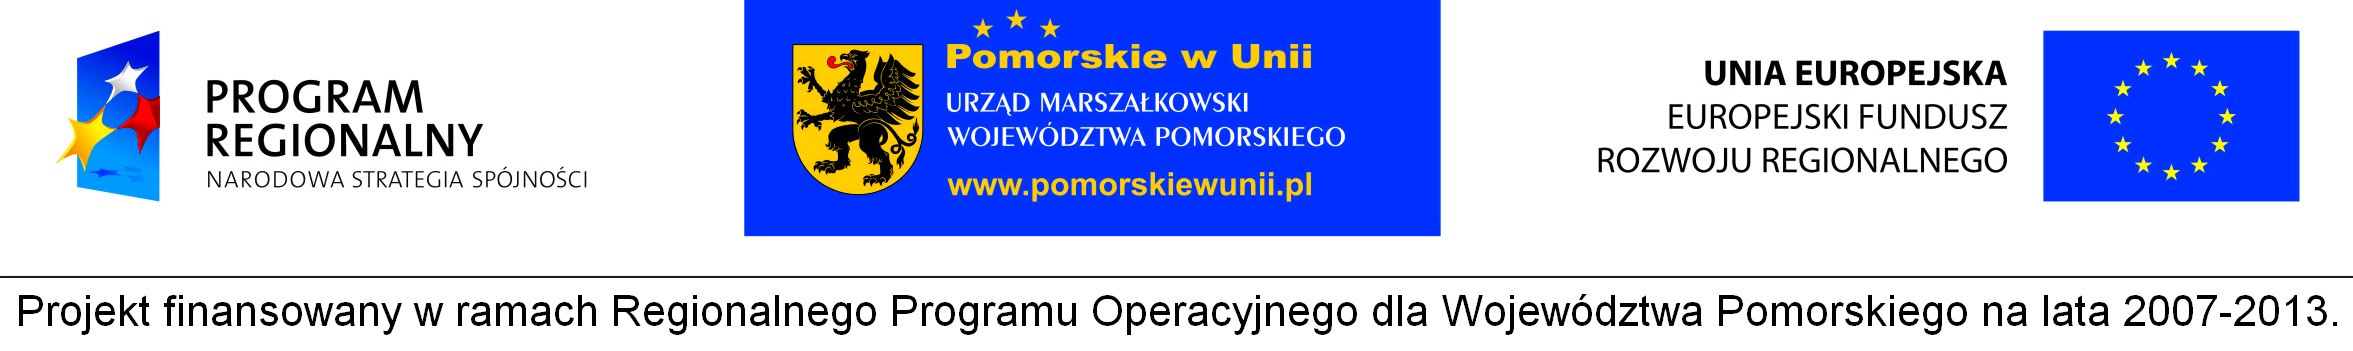 /res/BIP/Przechlewo/inwestycje/projekty_unijne/sloneczna_energia_dla_gminy_przechlewo/0211_logotypy_projekt_solarowy.jpg